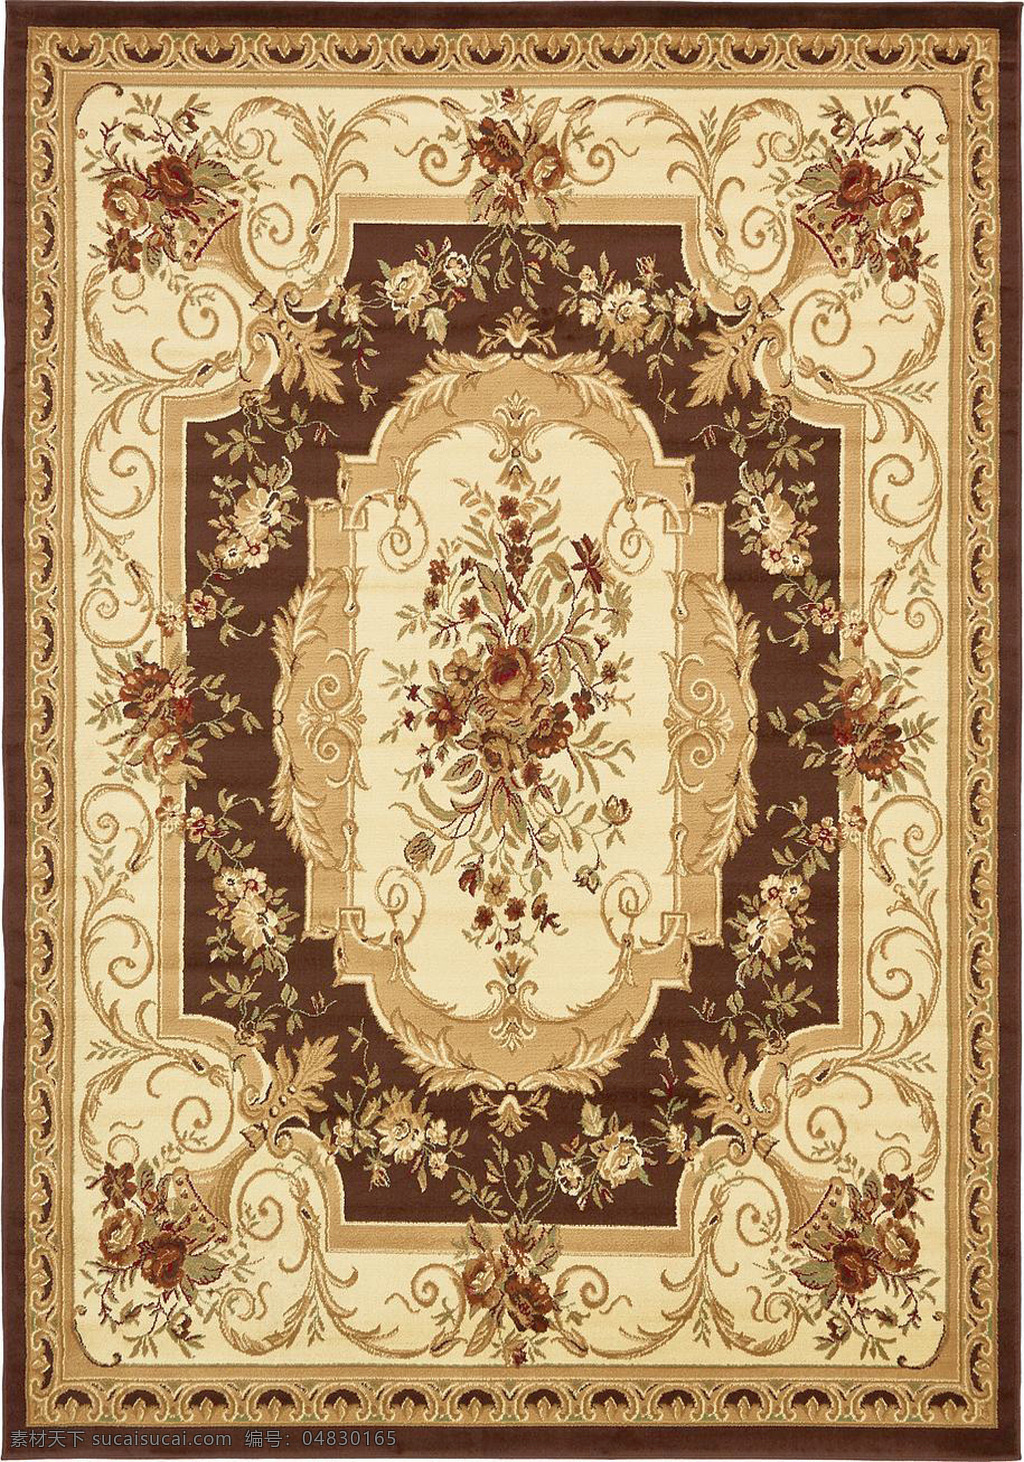 咖啡色 经典 地毯 花边 图案 花纹 底纹边框 地贴图 纹边 欧式贴图 地毯贴图